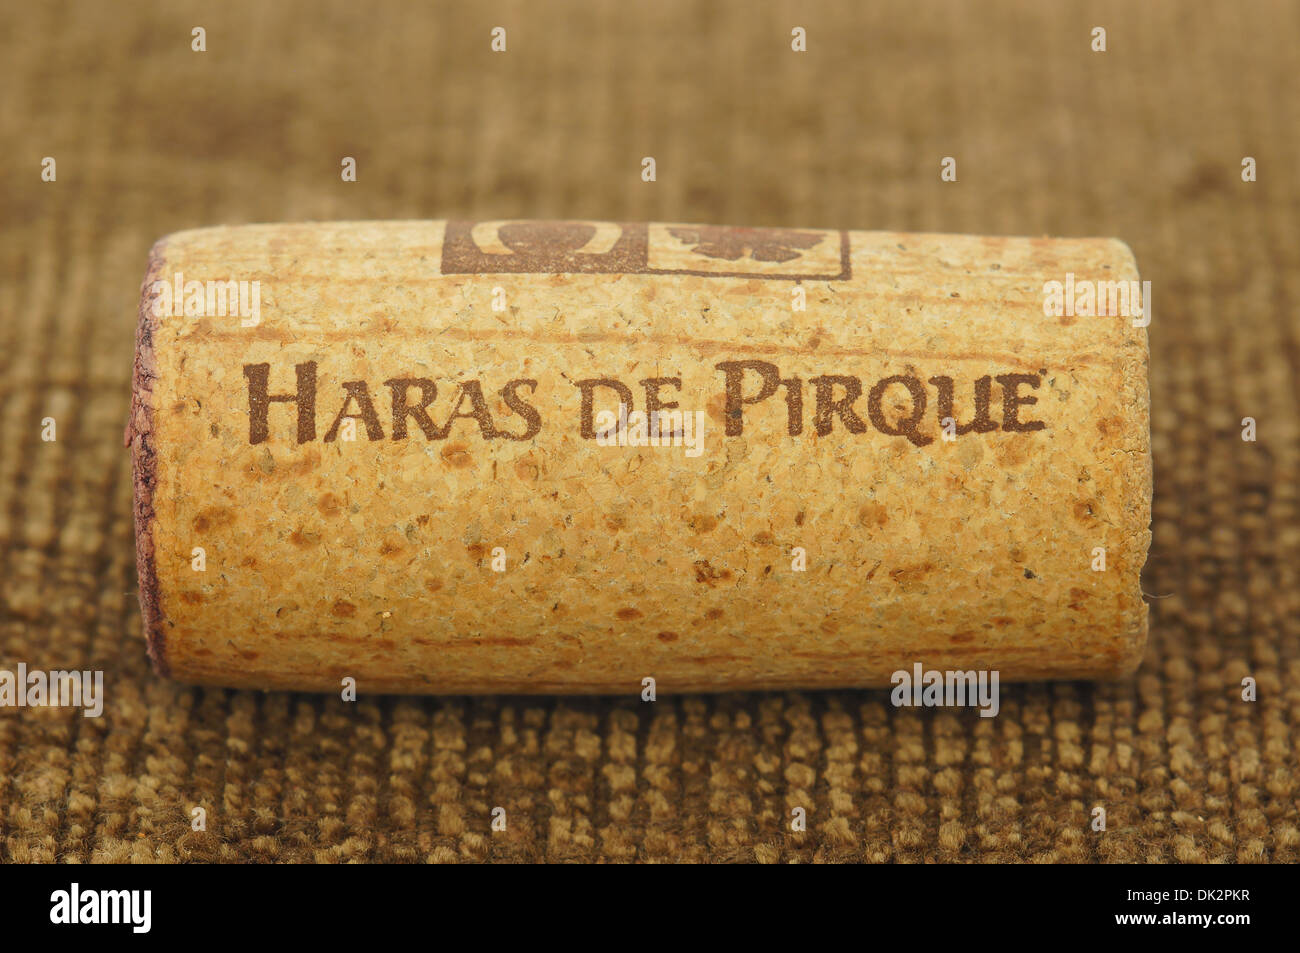 Haras de Pirque chilean wine cork stopper Stock Photo